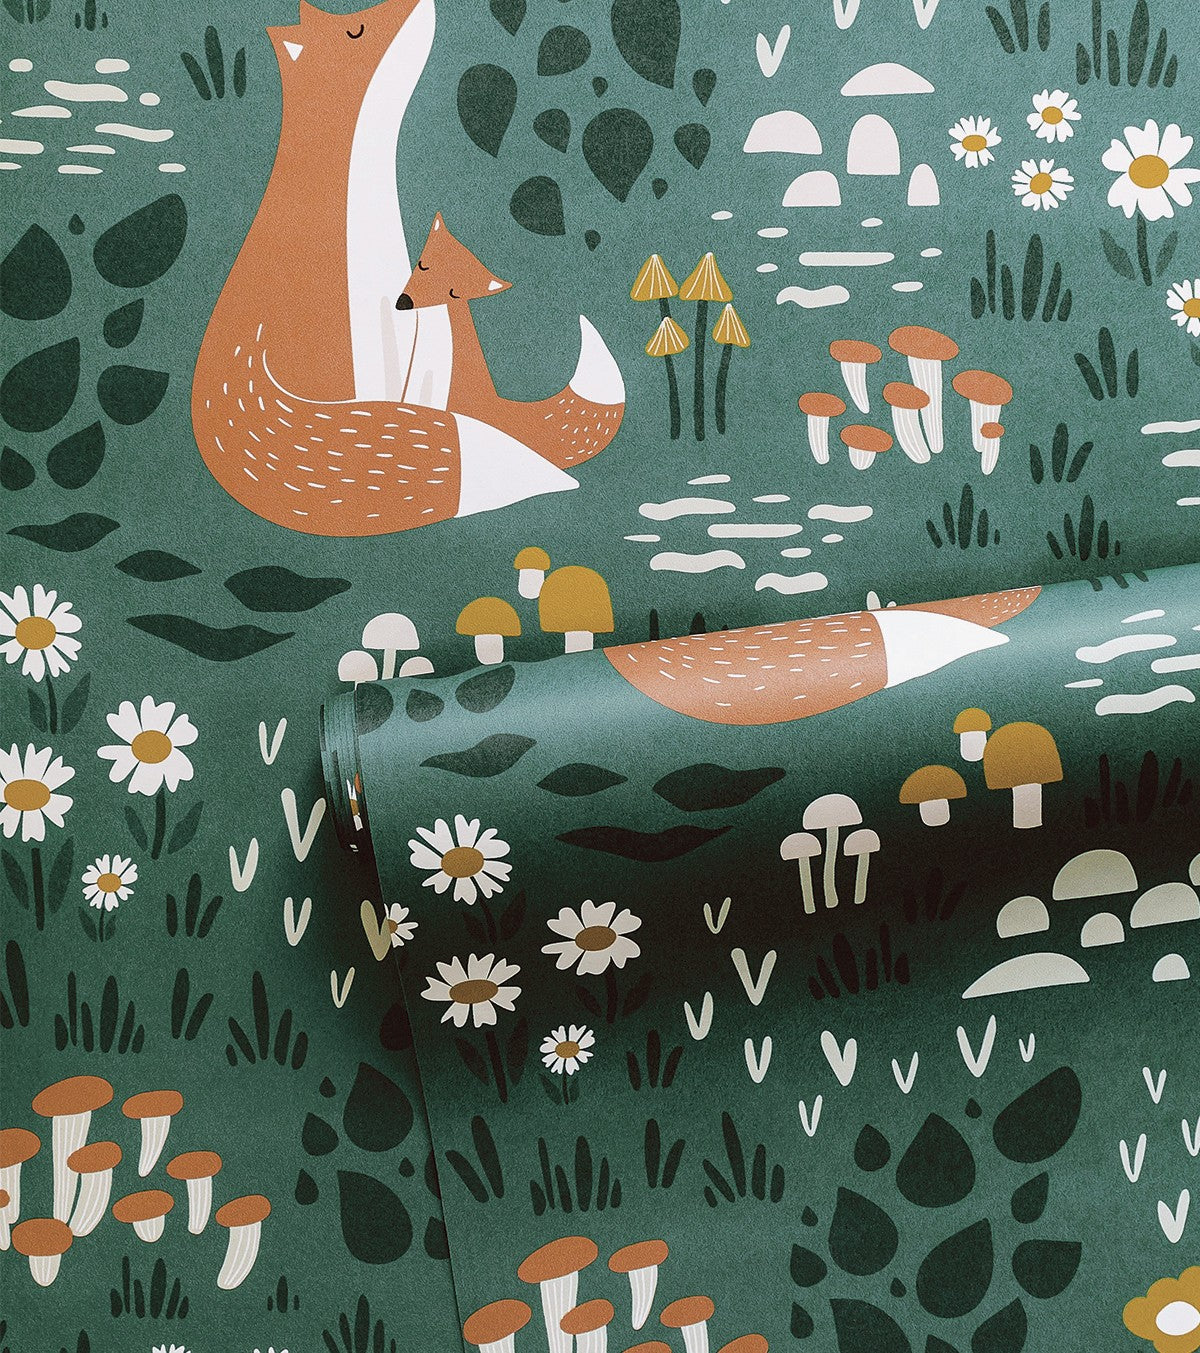 FOREST HAPPINESS - Bakgrundsbild för barn - Motiv av skogsdjur